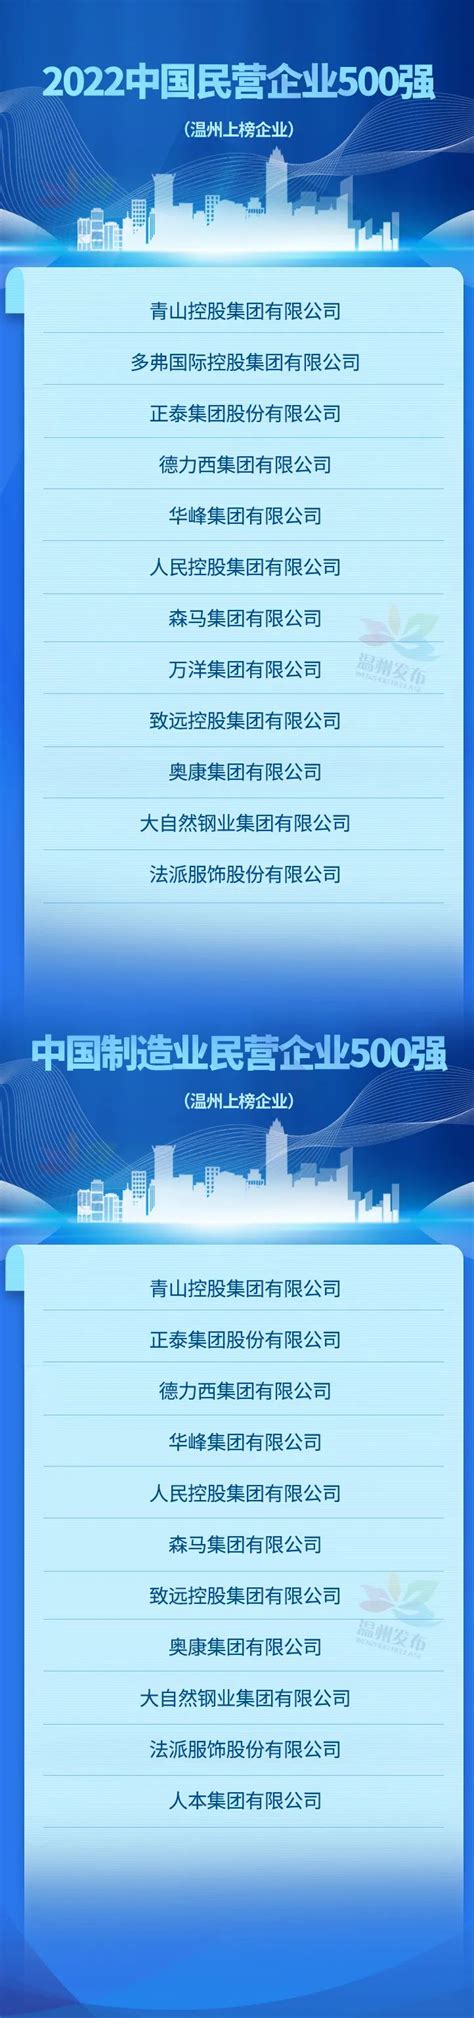 2020年中国民营企业500强 积极投身国家战略和区域协调发展战略_行业研究报告 - 前瞻网